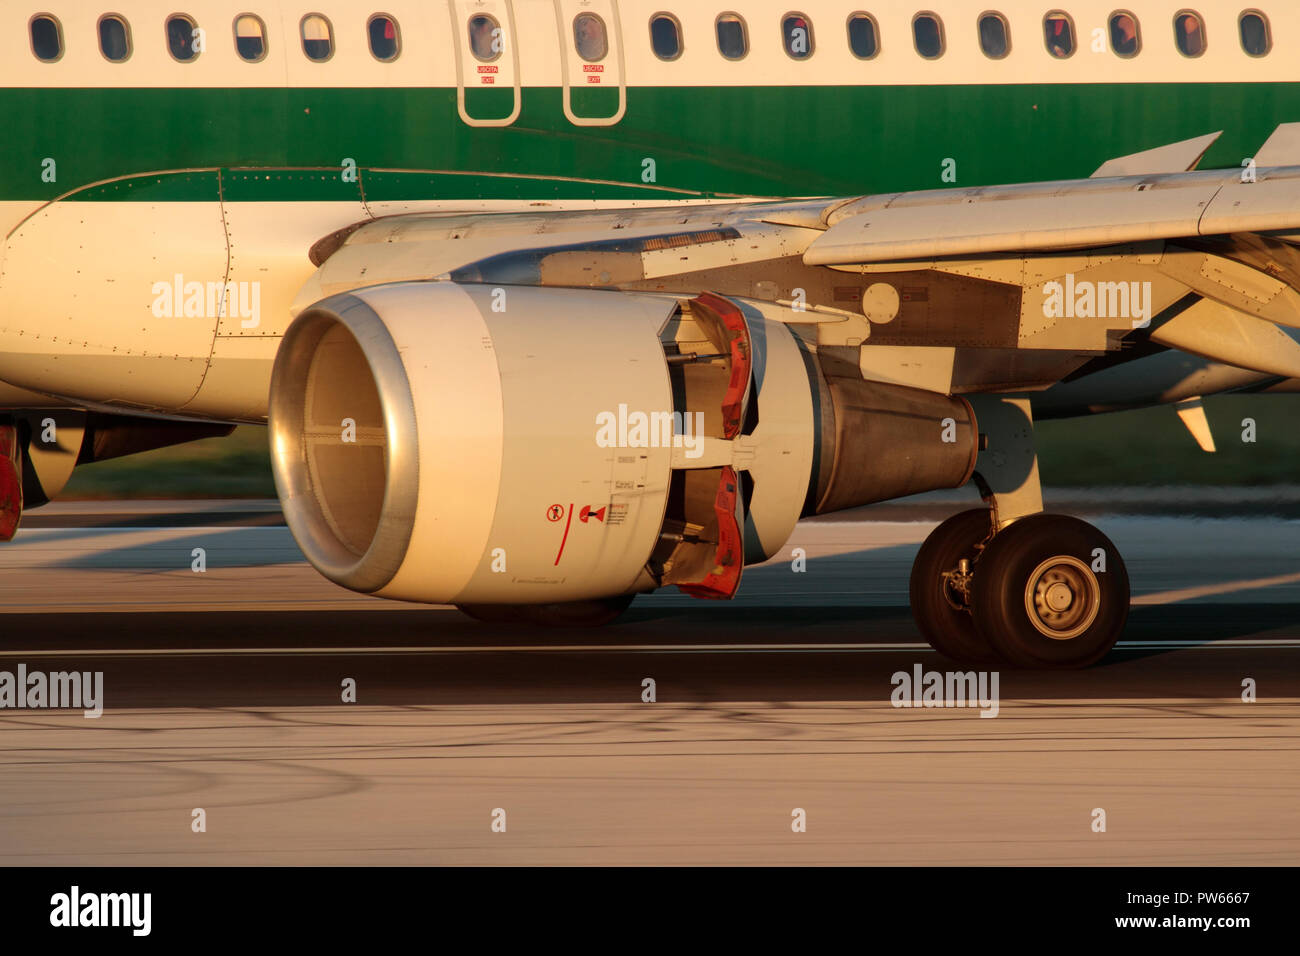 Gros plan d'un moteur à réaction à turboventilateur CFM56 sur un avion Airbus A320 lors de l'atterrissage avec inverseurs de poussée activés. Roues principales gauches également visibles. Banque D'Images